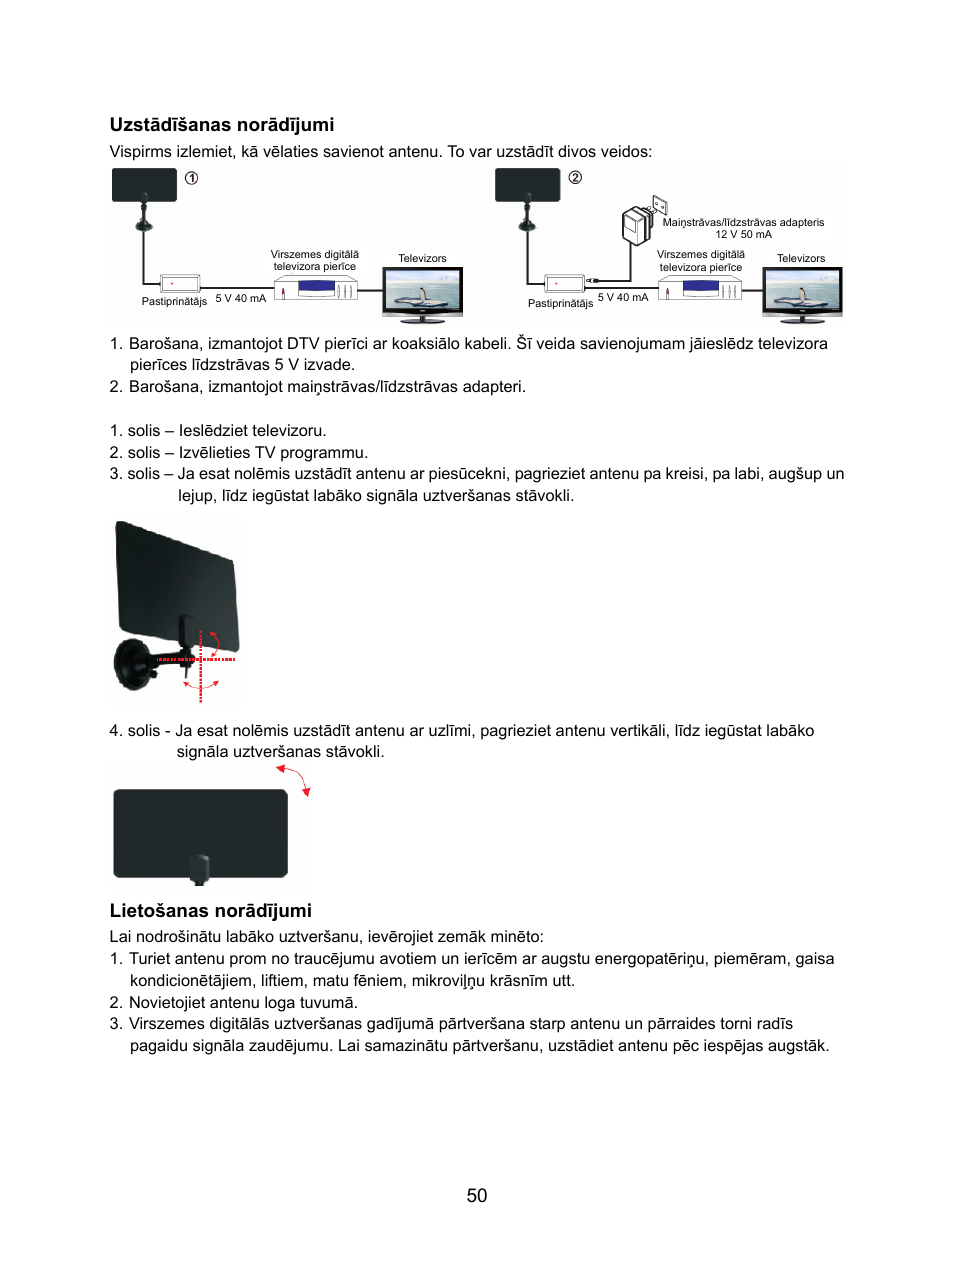 50 uzstādīšanas norādījumi, Lietošanas norādījumi | Konig Electronic DVB-T  indoor antenna 0.5 mm ultra-thin design 25 dB UHF User Manual | Page 50 / 54